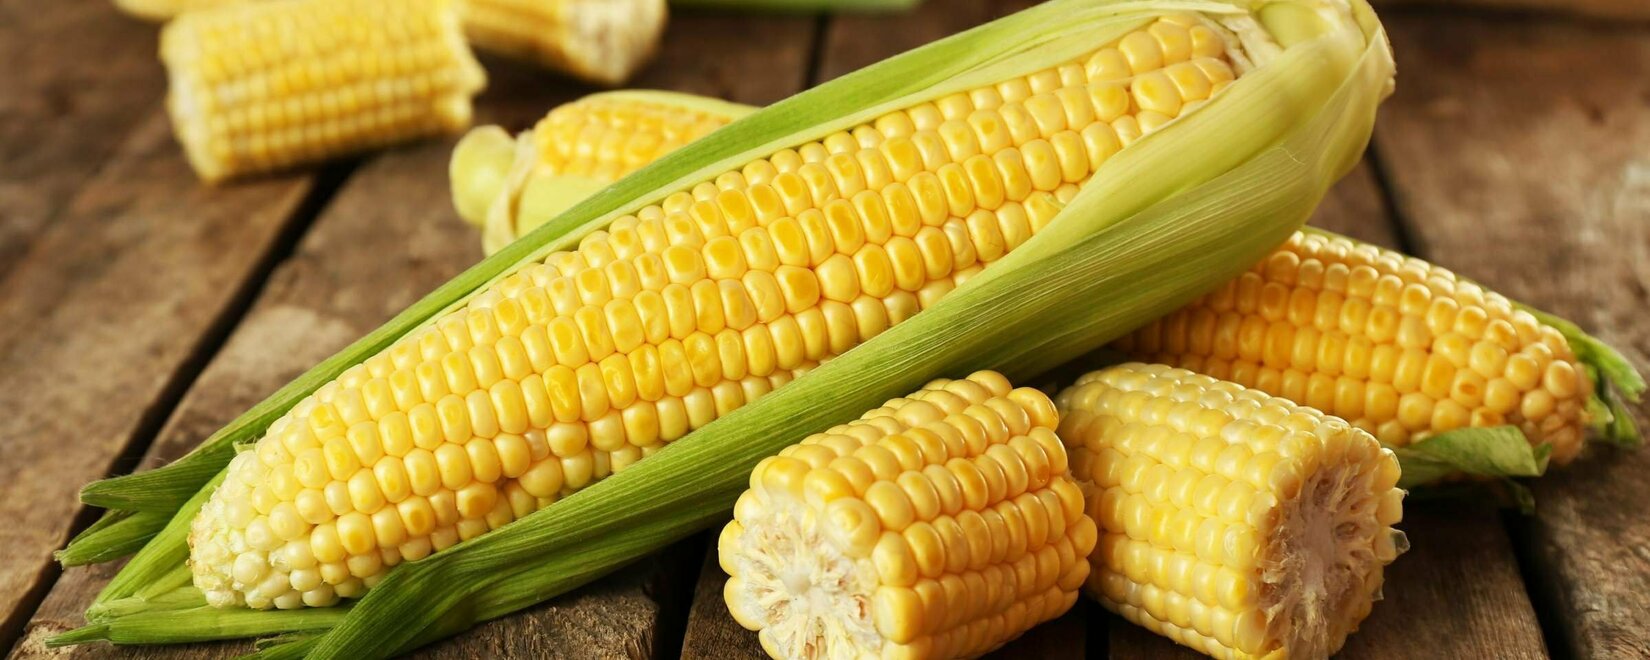 Фьючерсы кукурузы упали до минимума 2020 года во вторник, пшеница и соя тоже подешевели